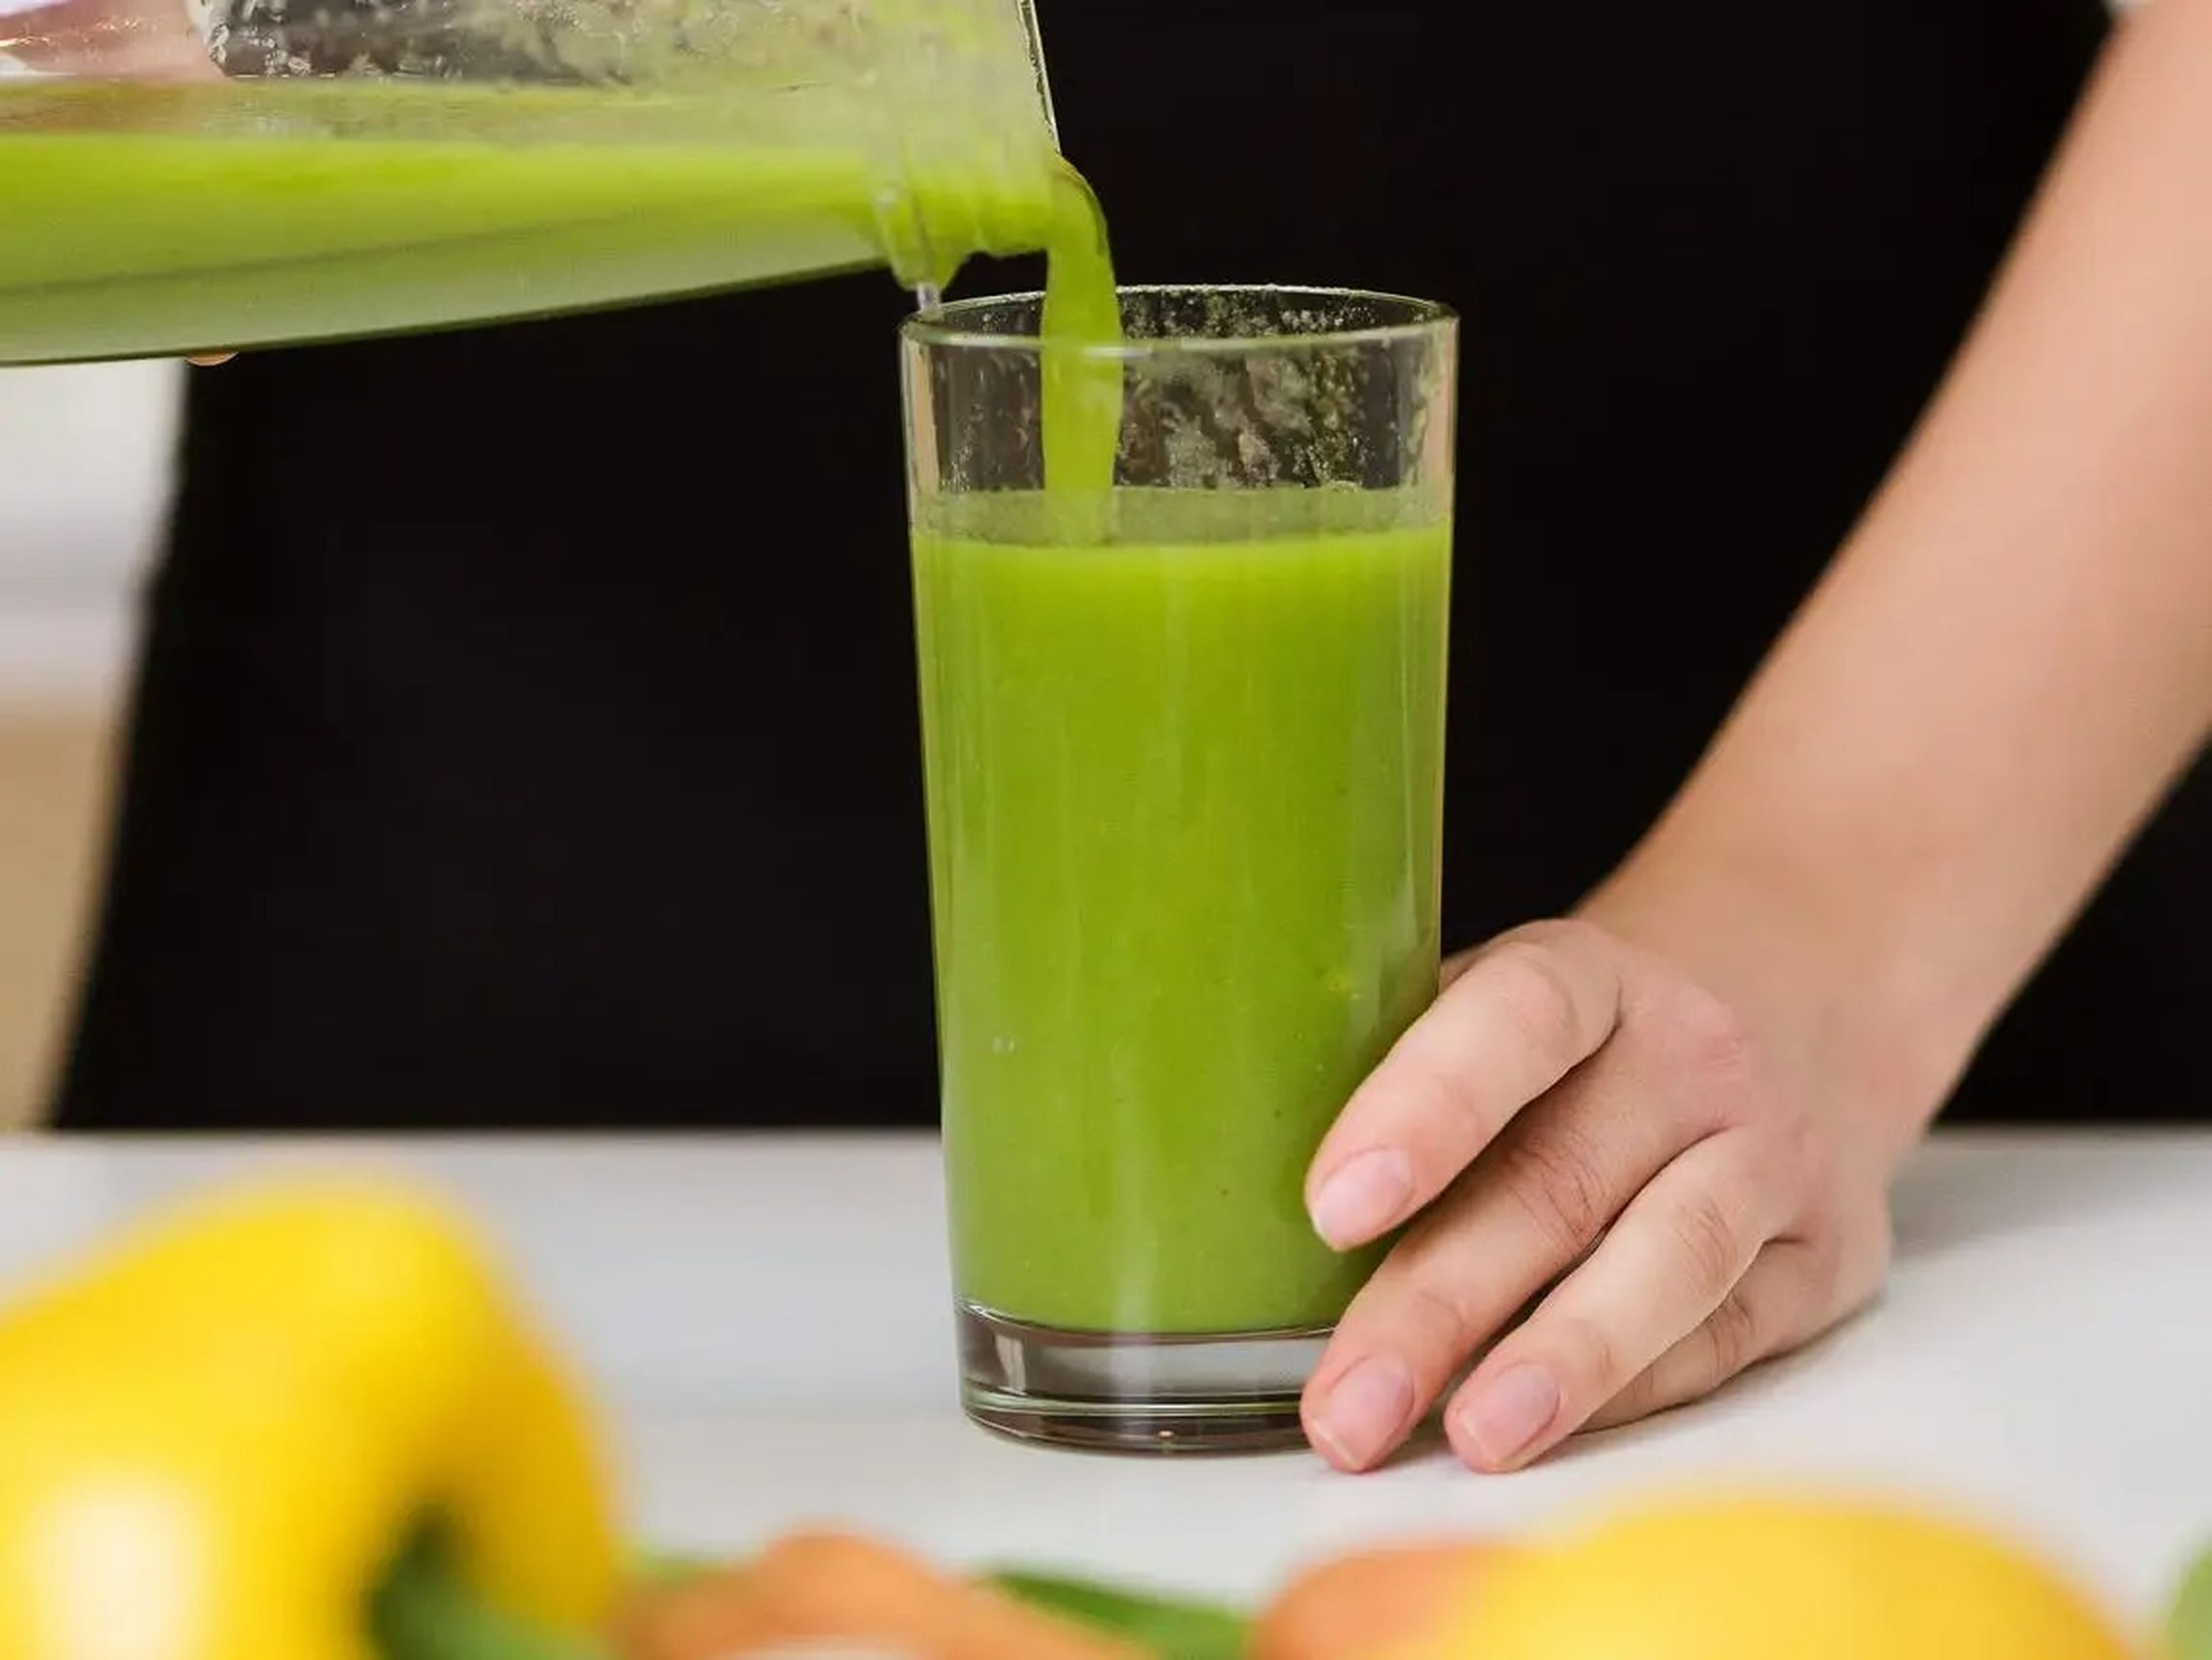 Los zumos detox pueden eliminar partes más saludables de las frutas y verduras y aumentar el azúcar y las calorías.